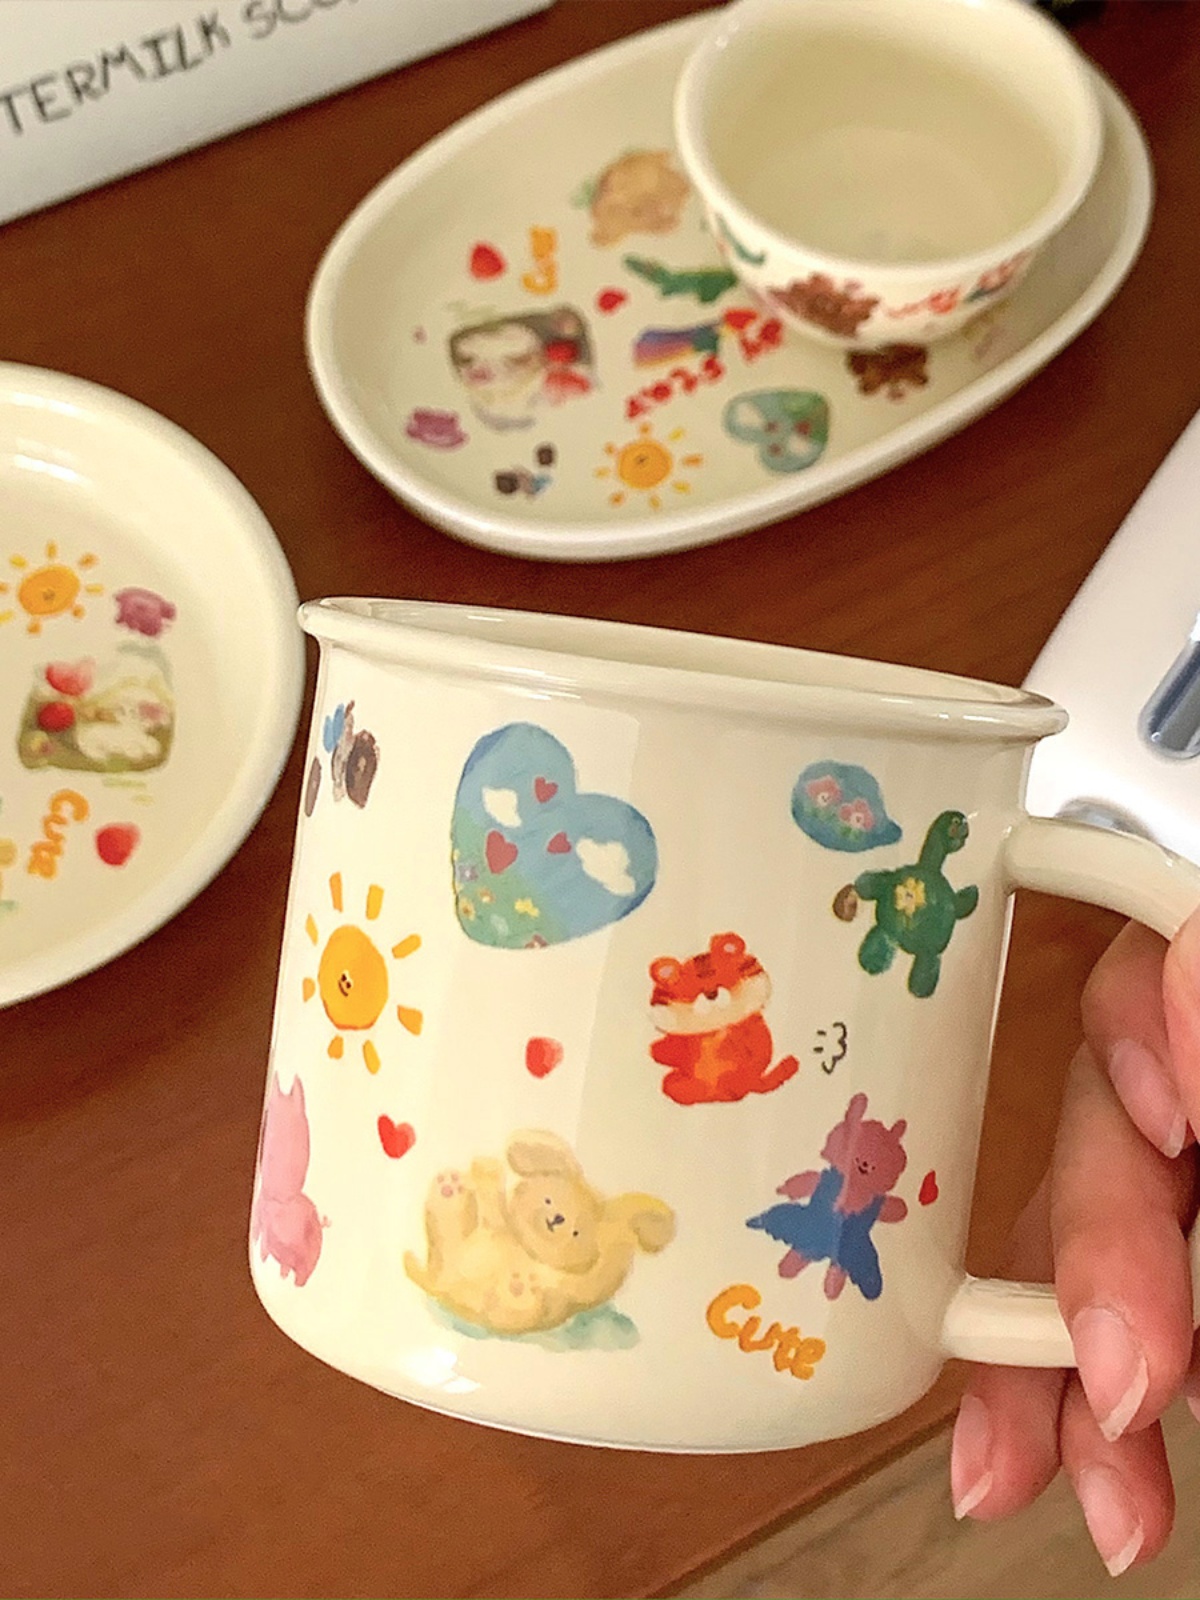 日系風格奶油色陶瓷盤 手繪小熊漫畫塗鴉少女 甜品點心盤 馬克杯餐具 (8.3折)